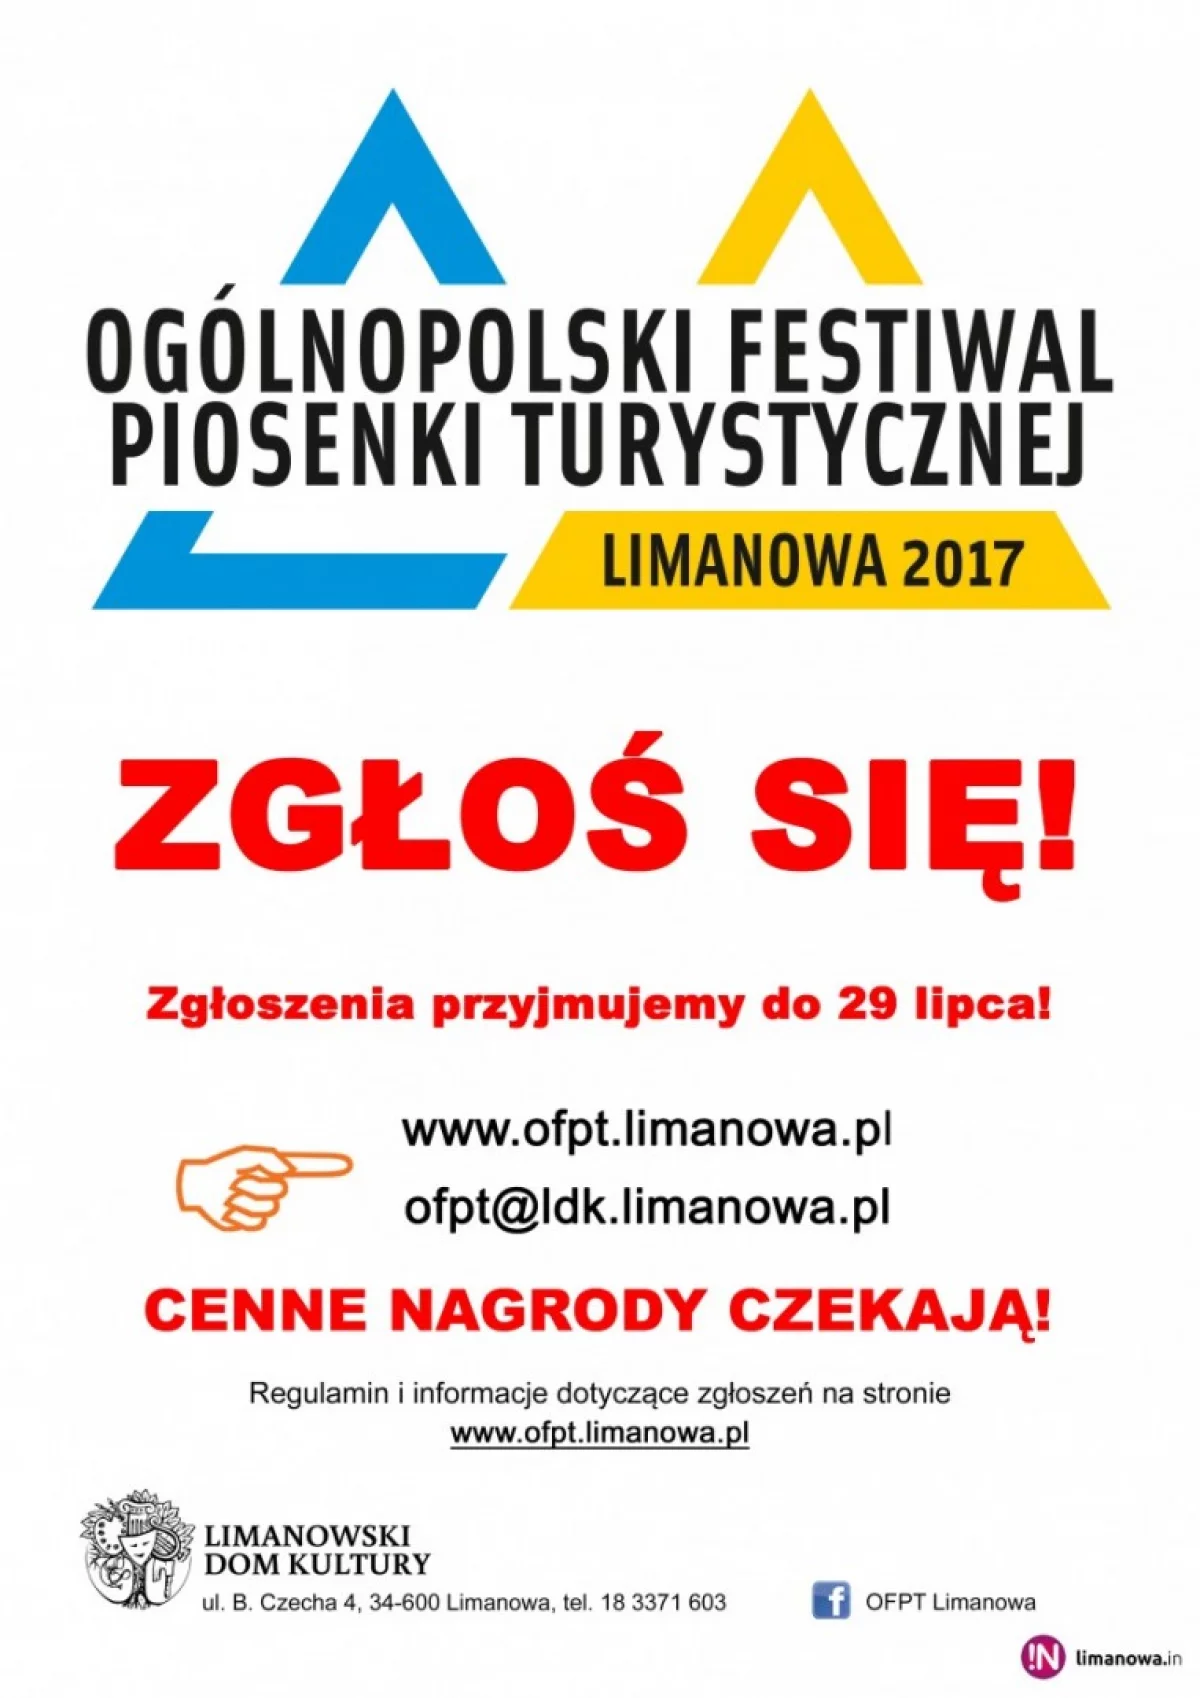 Ogólnopolski Festiwal Piosenki Turystycznej Limanowa 2017 – zgłoś się!